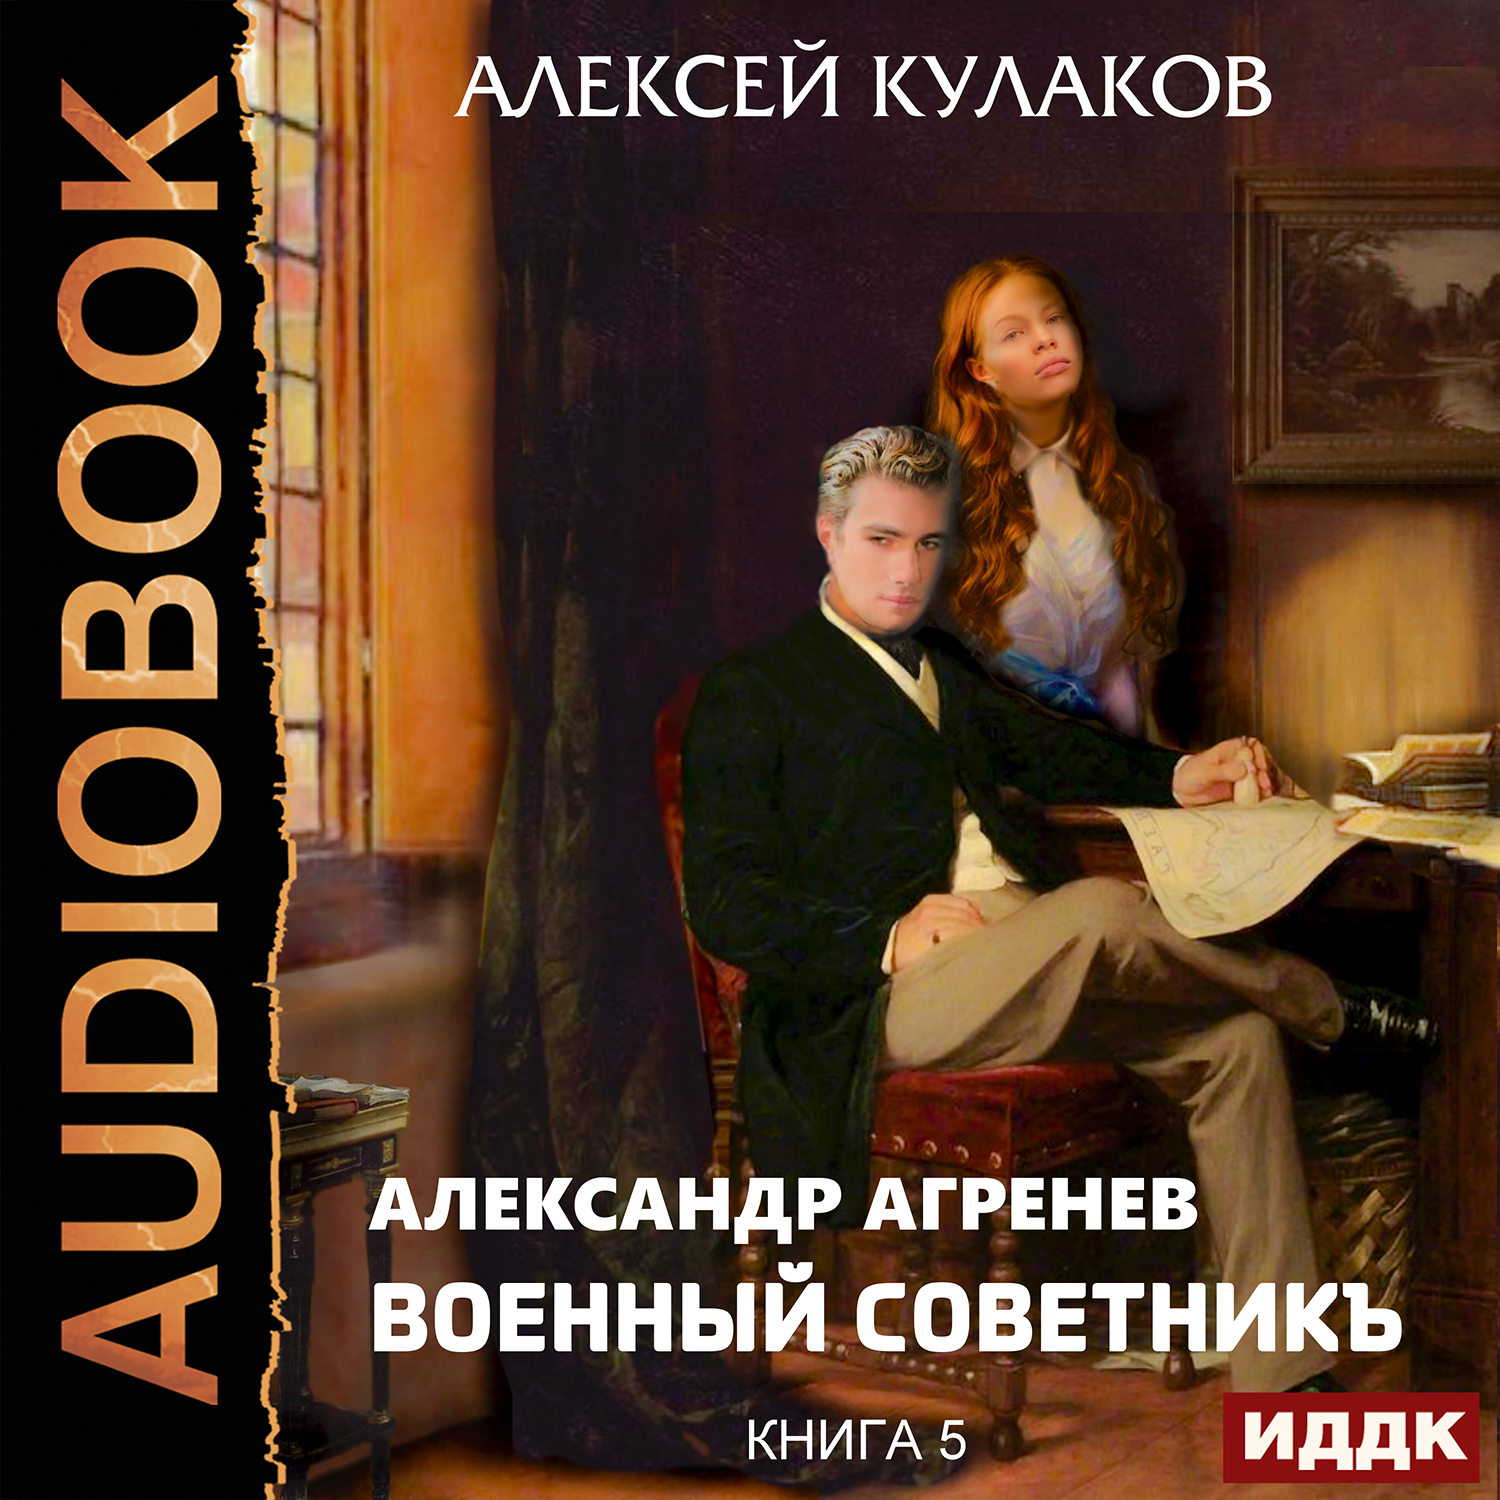 Александр Агренев: Военный советникъ. Книга 5 (цифровая версия) (Цифровая версия)